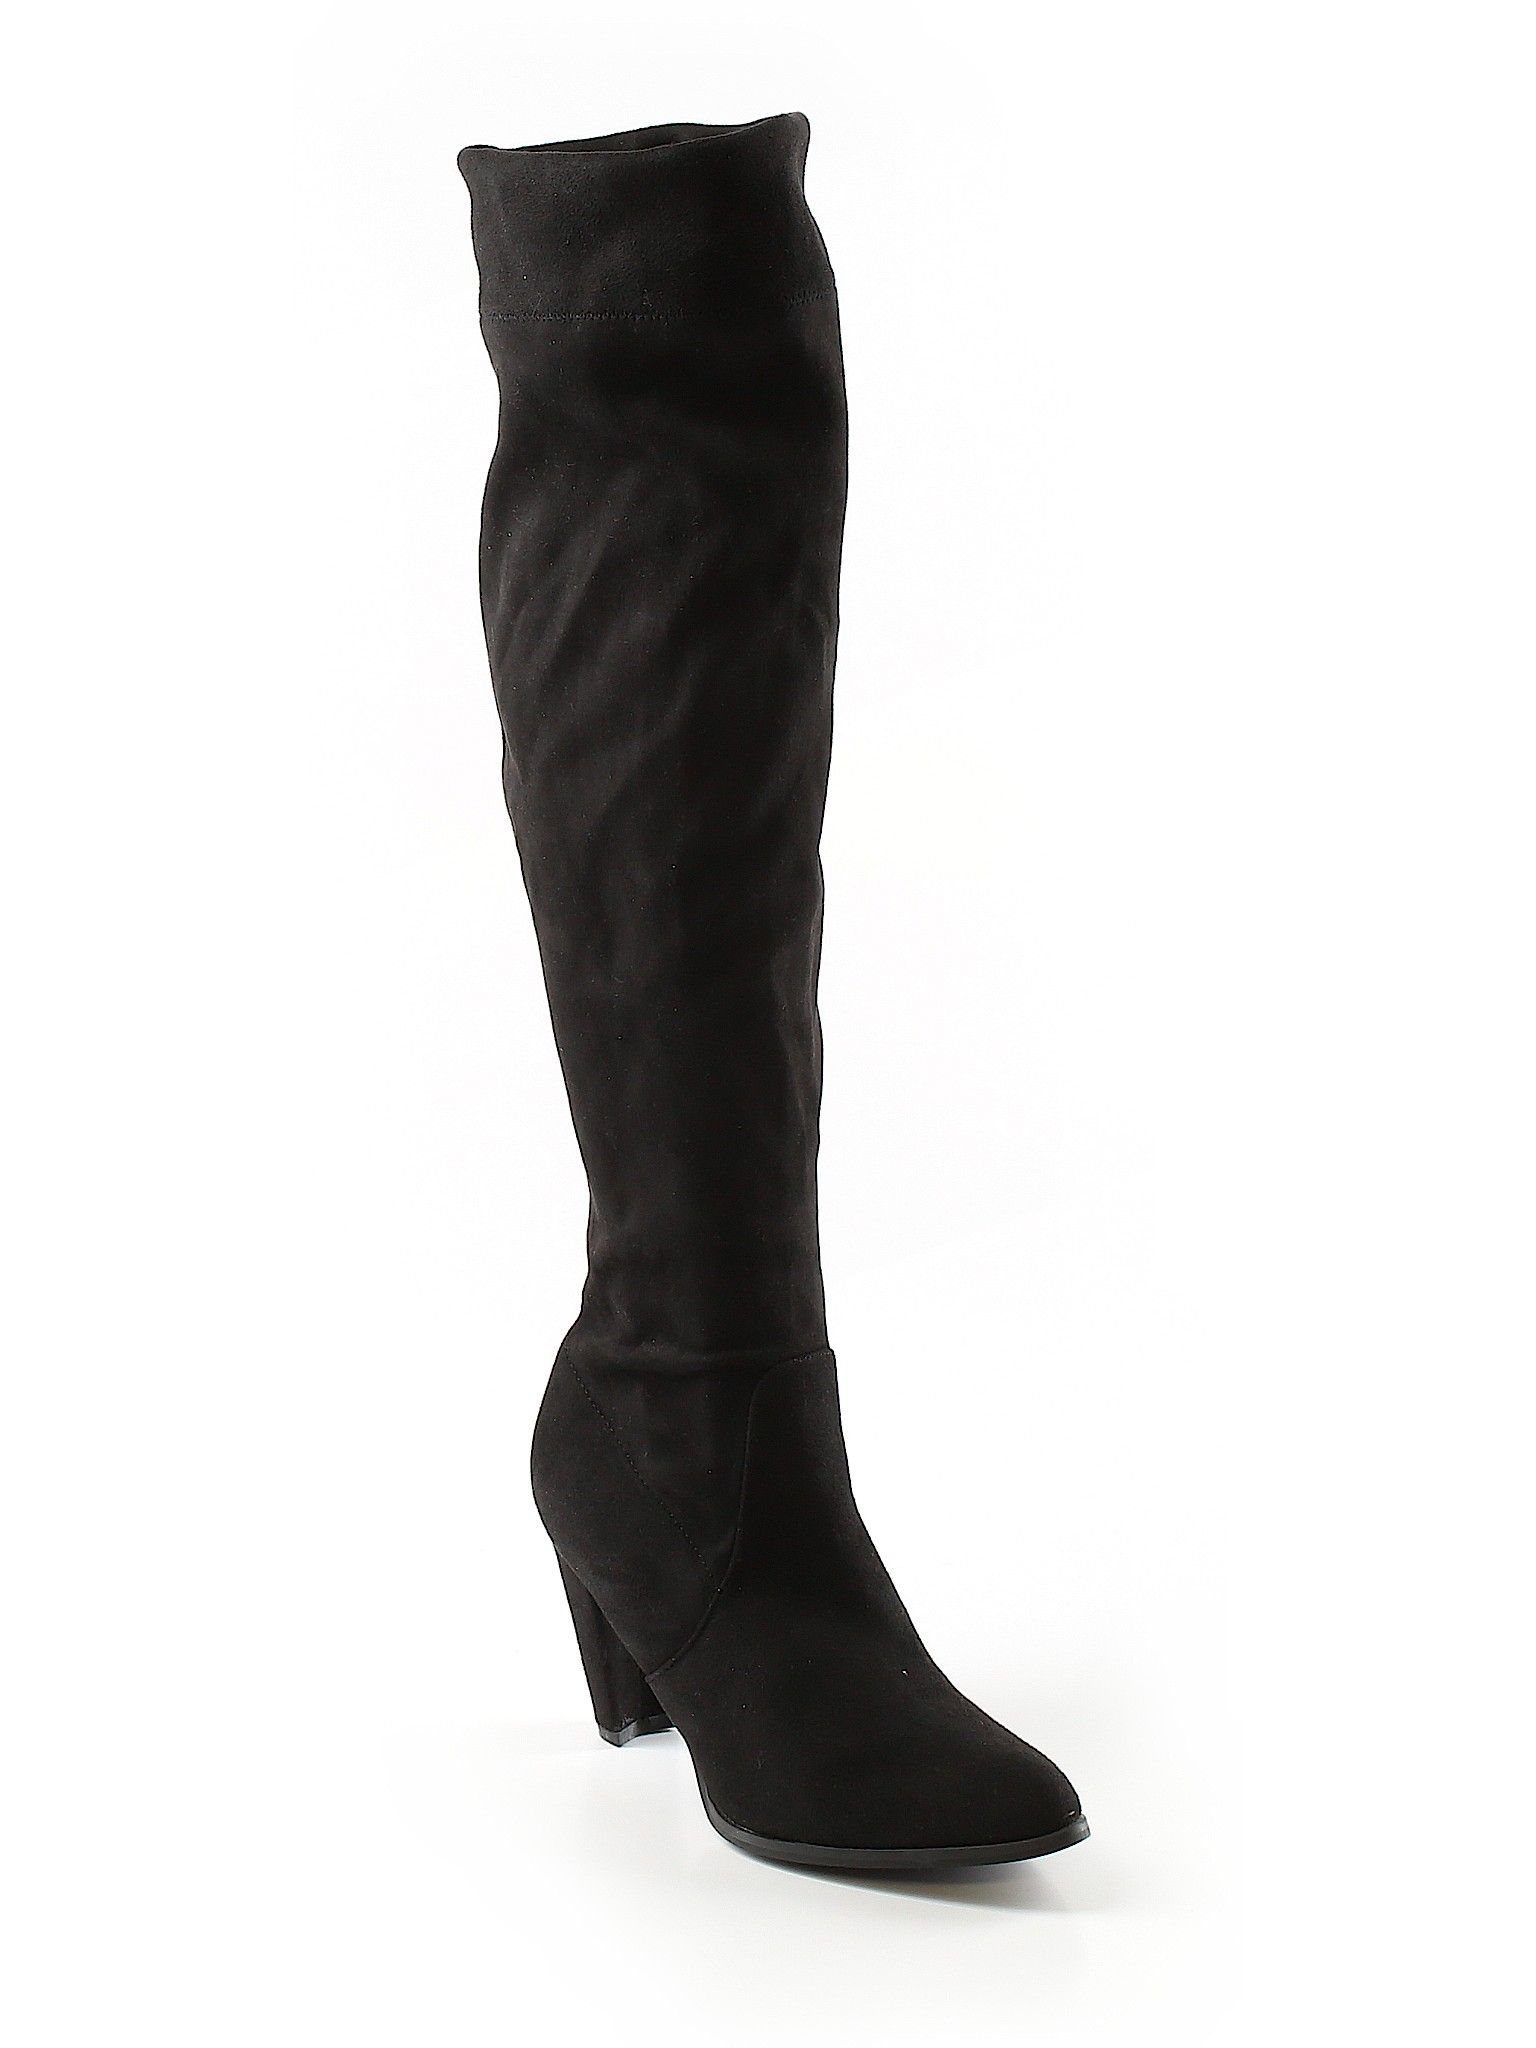 CATHERINE Catherine Malandrino Boots Size 6 1/2: Black Women's Clothing - 44316123 | thredUP